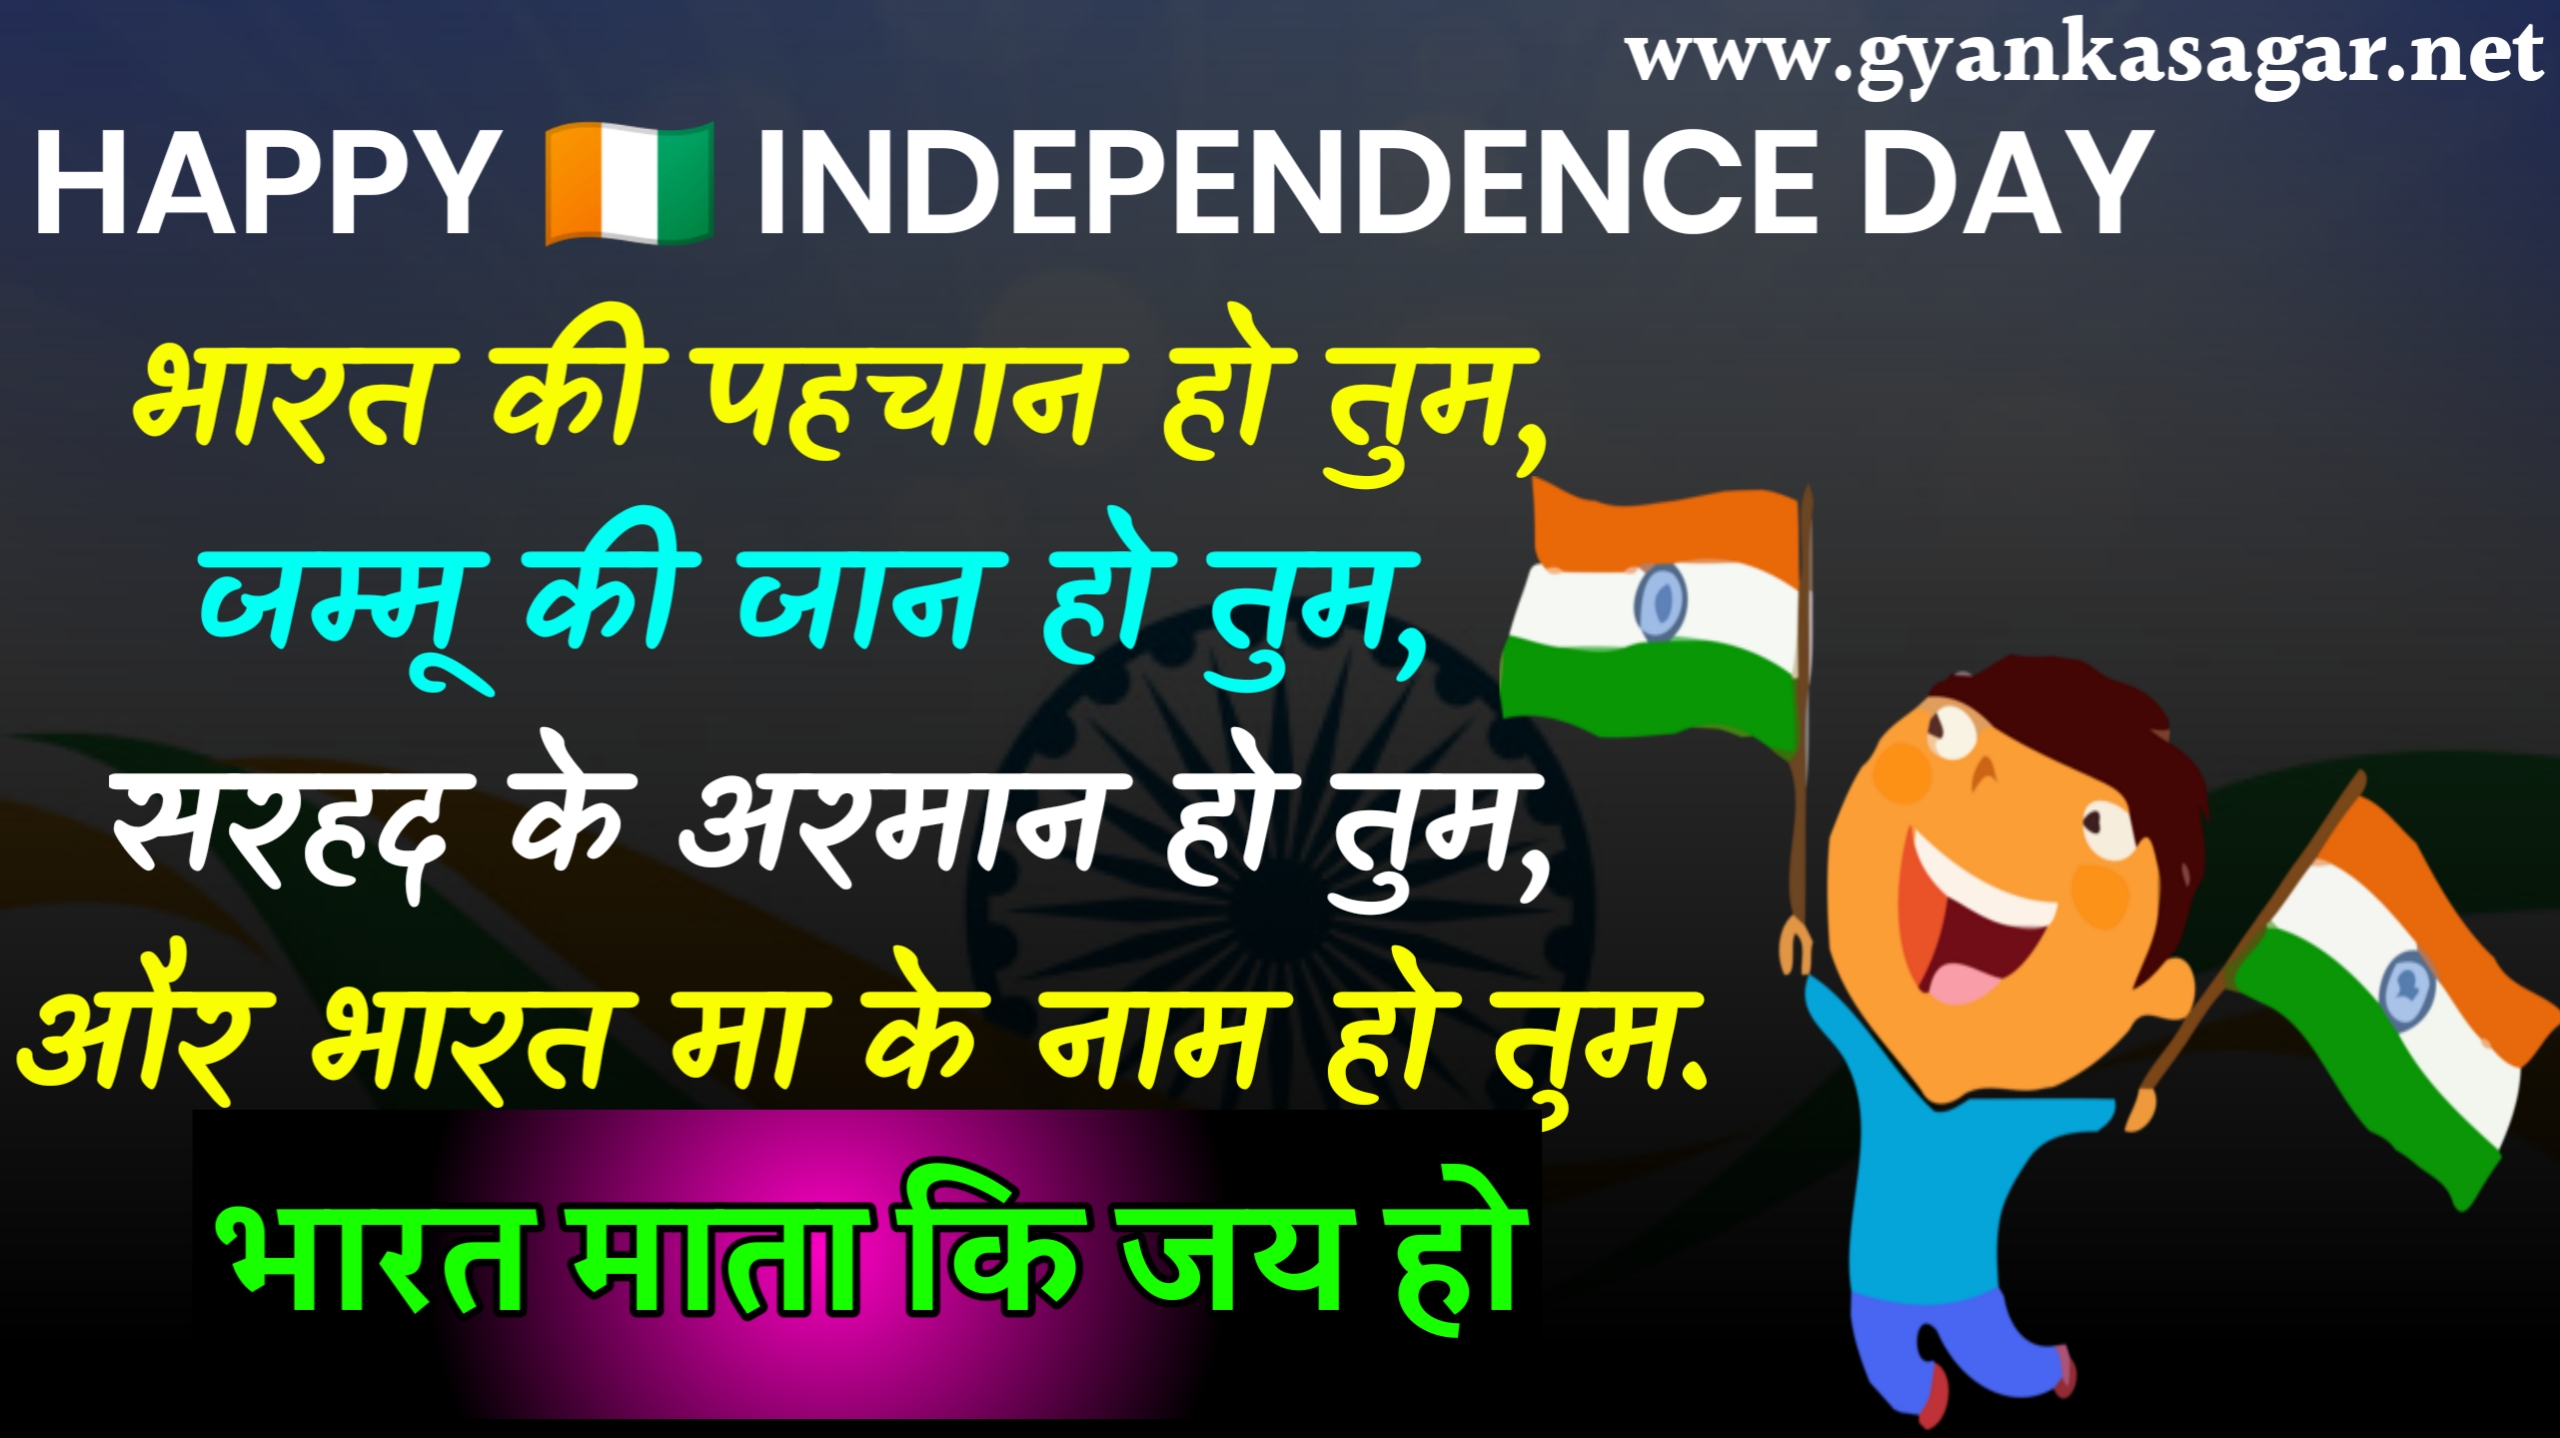 15 अगस्त पर शायरी 2023 | स्वतंत्रता दिवस पर शायरी 2023 | Happy Independence day shayari in Hindi 2023,independence day shayari status quotes wishes in hindi 2023,15 अगस्त की शुभकामनाएं भेजें 2023